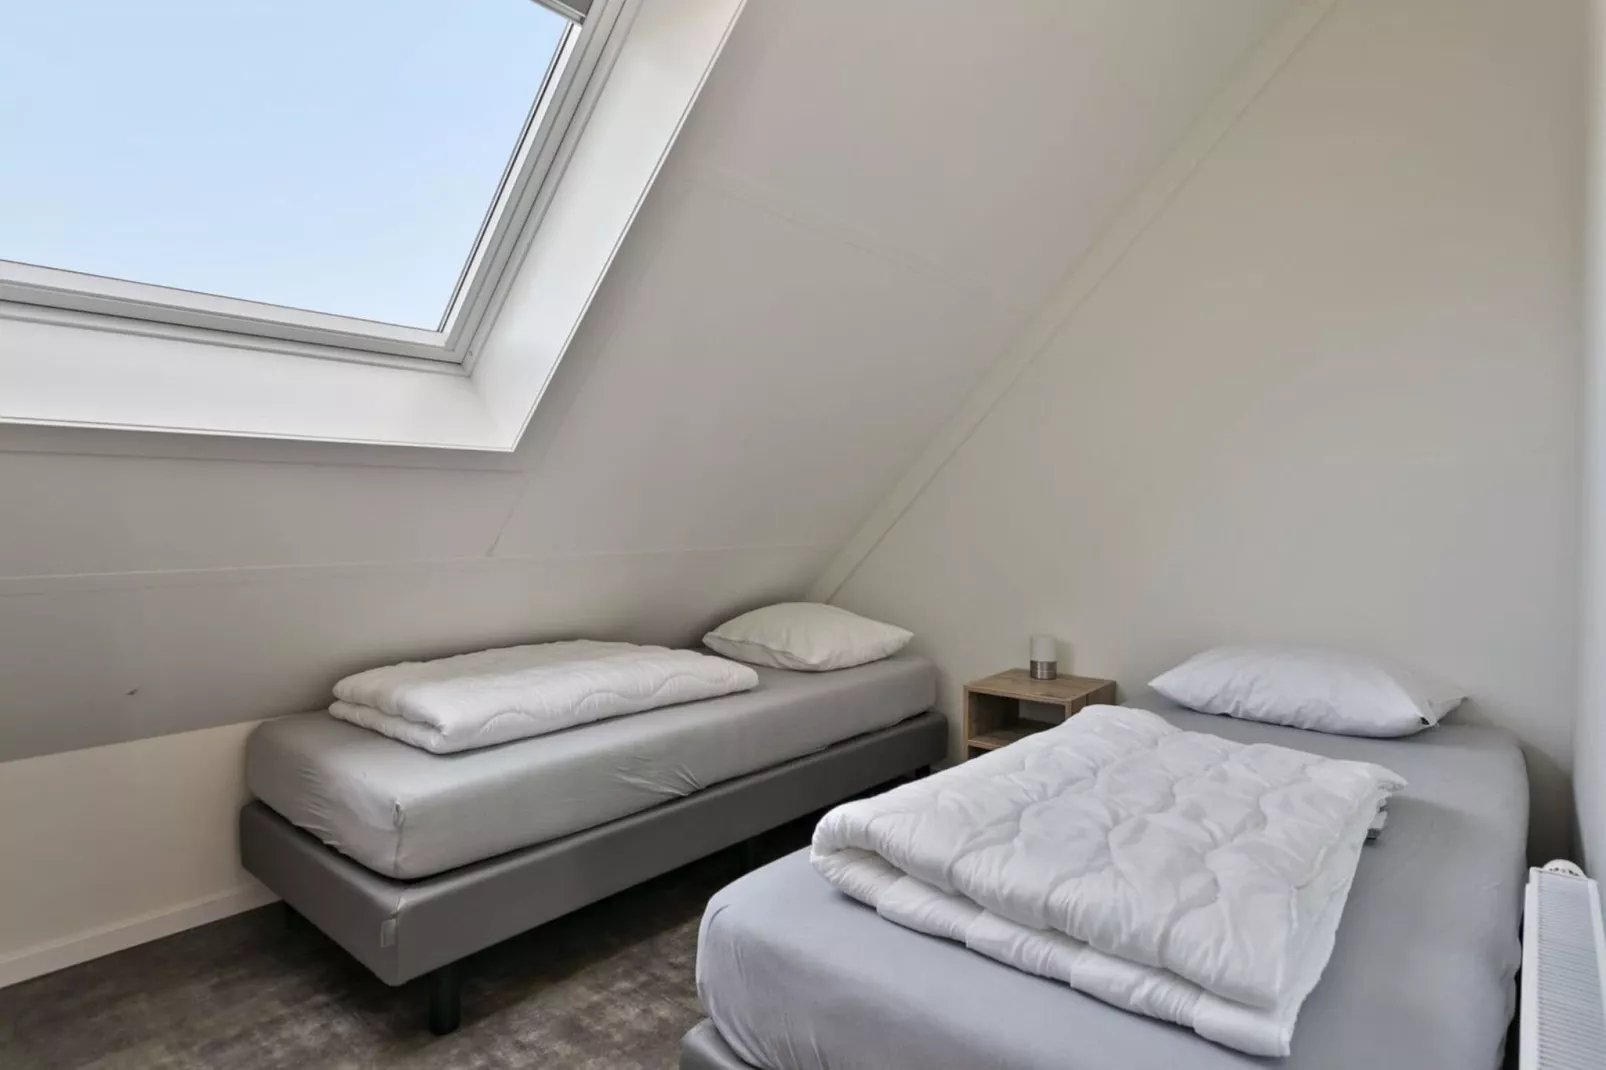 Villa Hopper met jacuzzi extra kosten voor gebruik-Slaapkamer